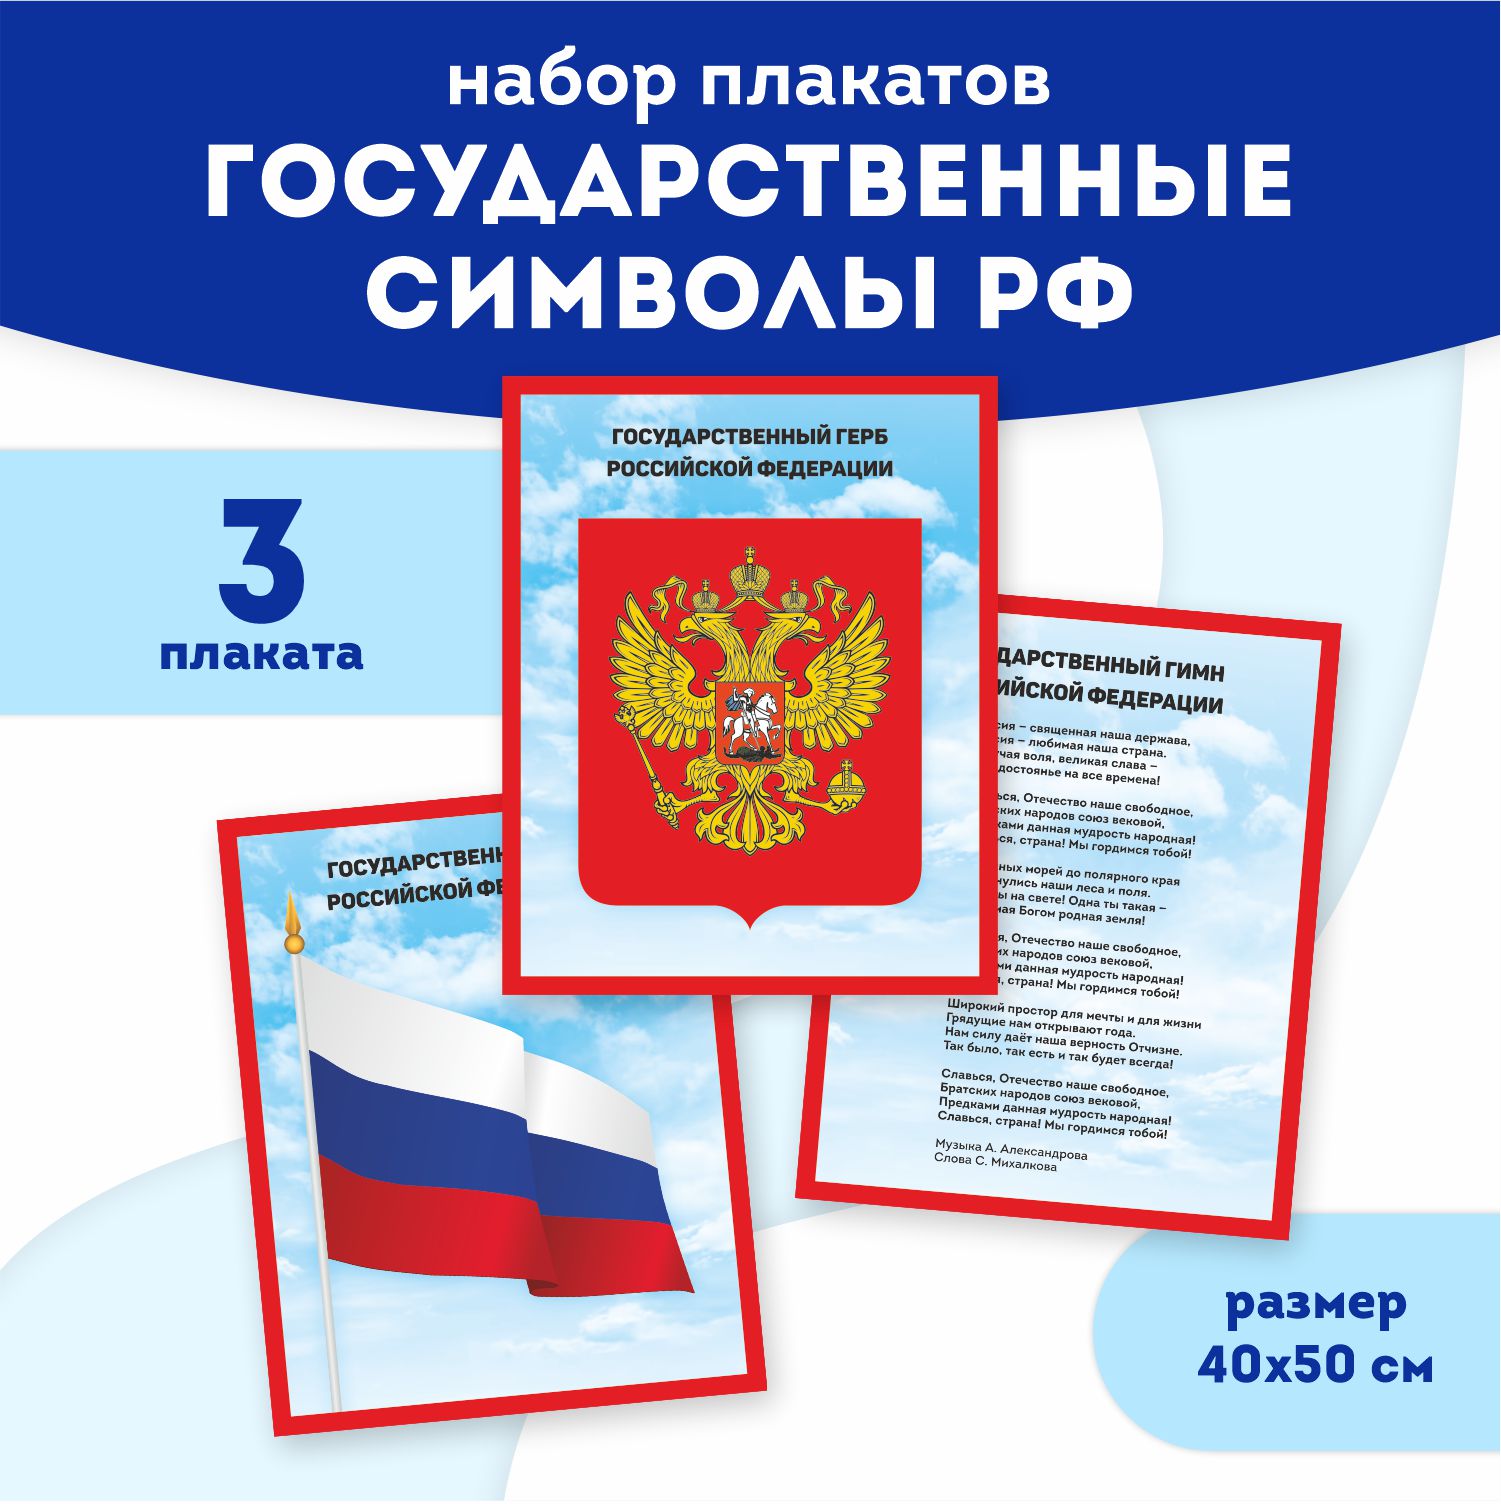 Набор плакатов Выручалкин, Государственные символы РФ, 3 шт набор наклеек патриотических